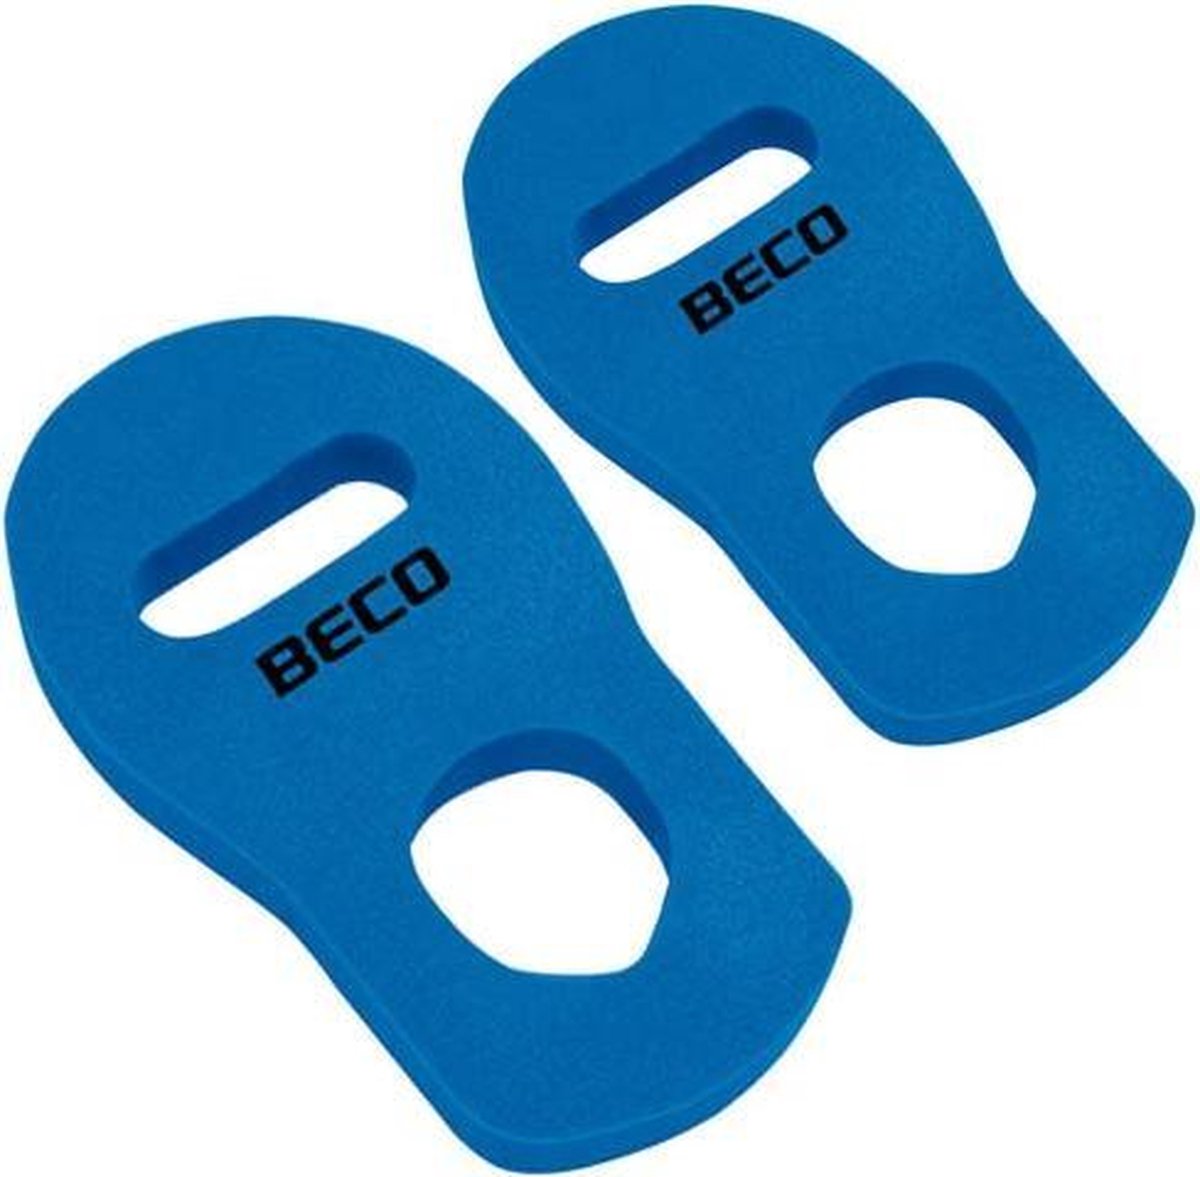 Beco Aqua-kickbox Handschoenen Blauw Maat Xl 2-delig - BECO